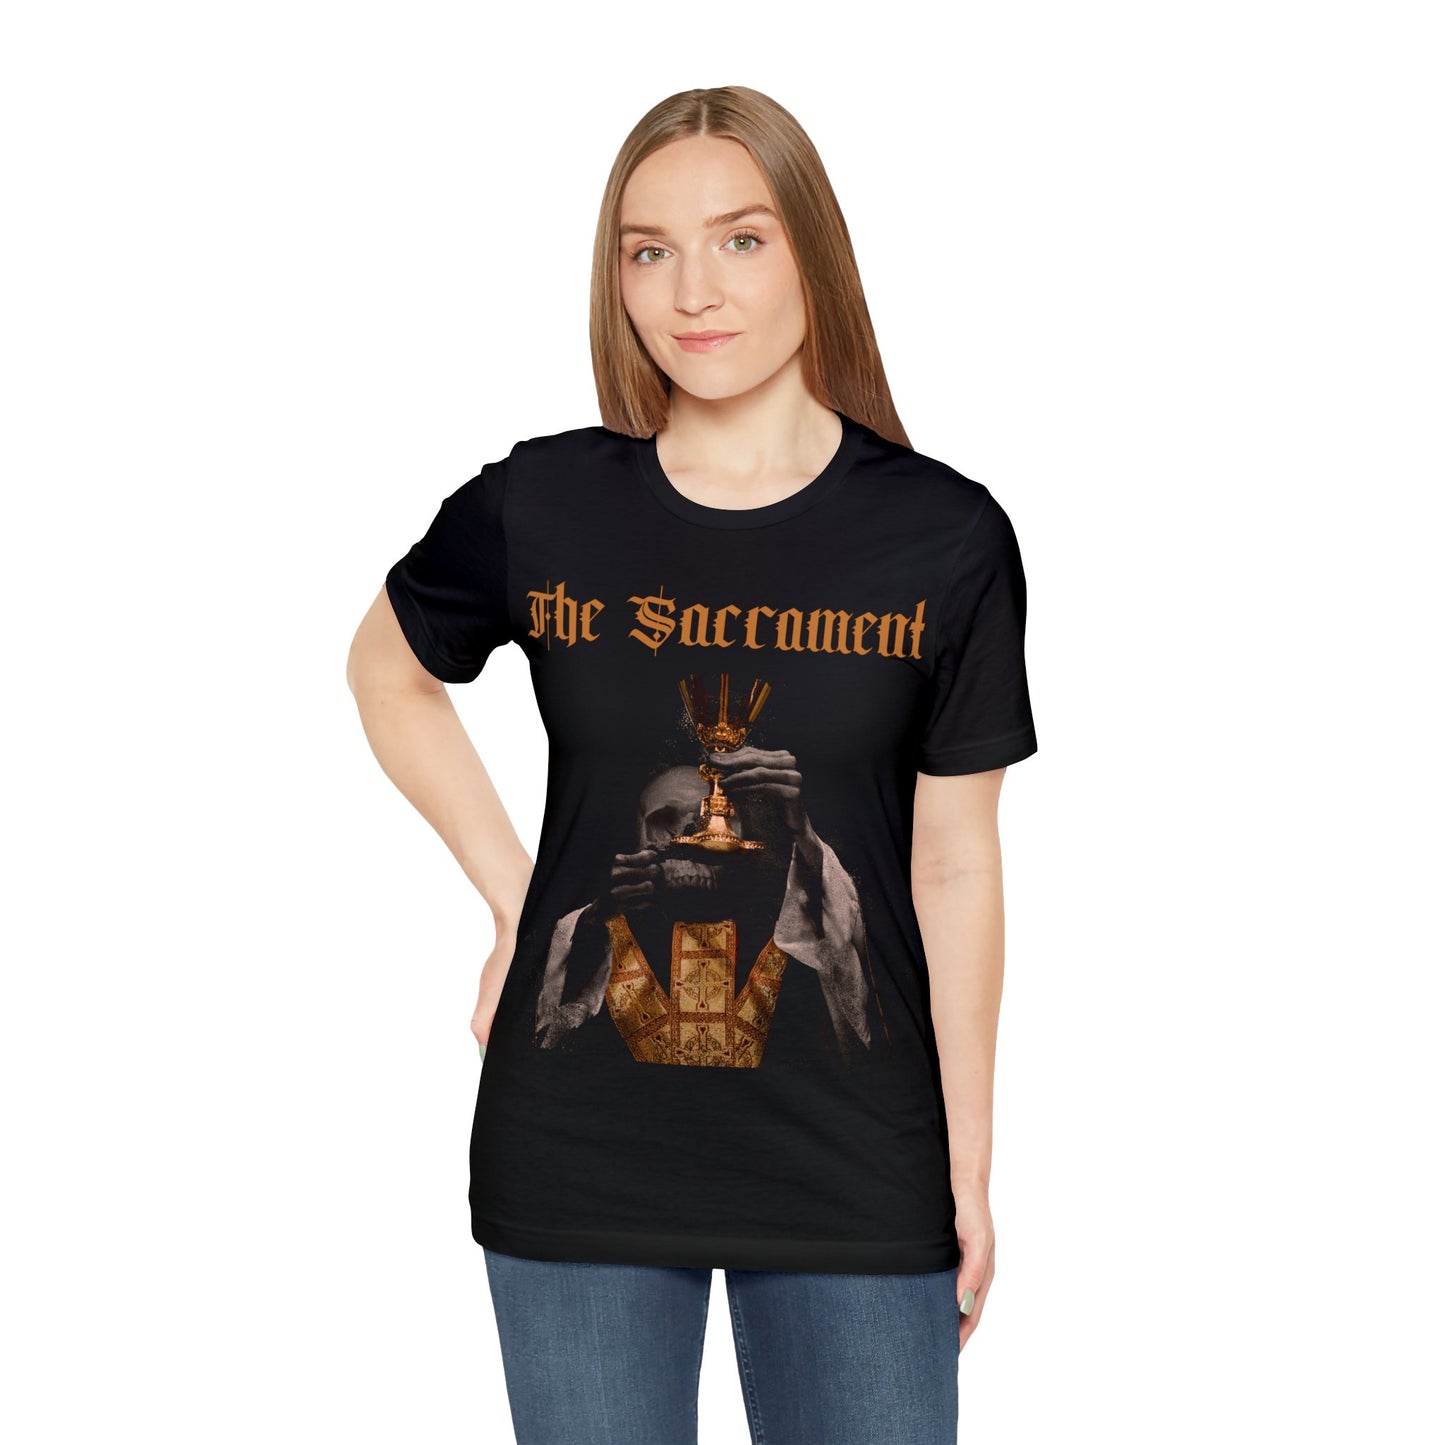 The Sacrament T-Shirt